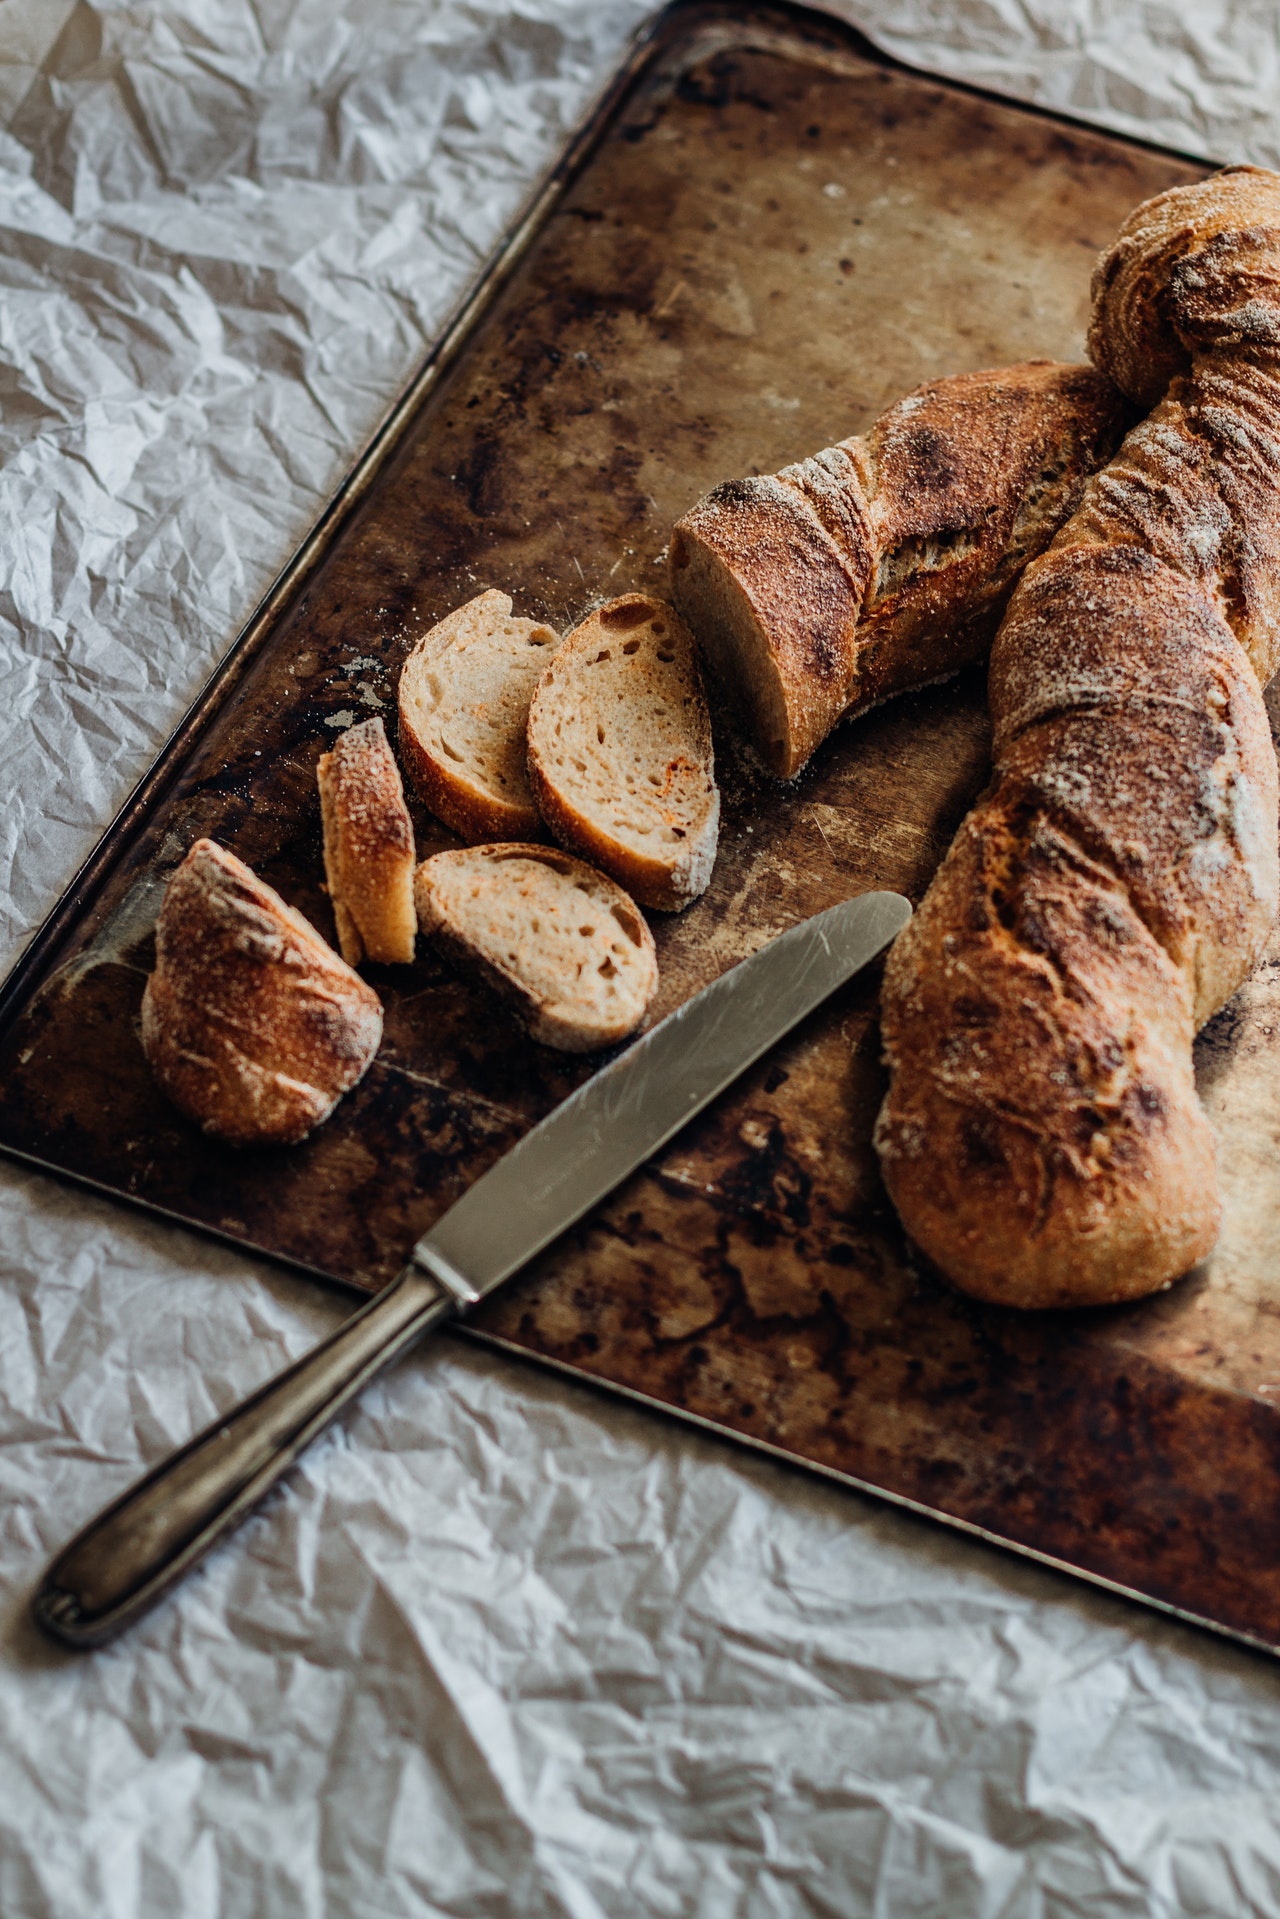 100% Einkorn Bread Recipe – surprisingly delicious!